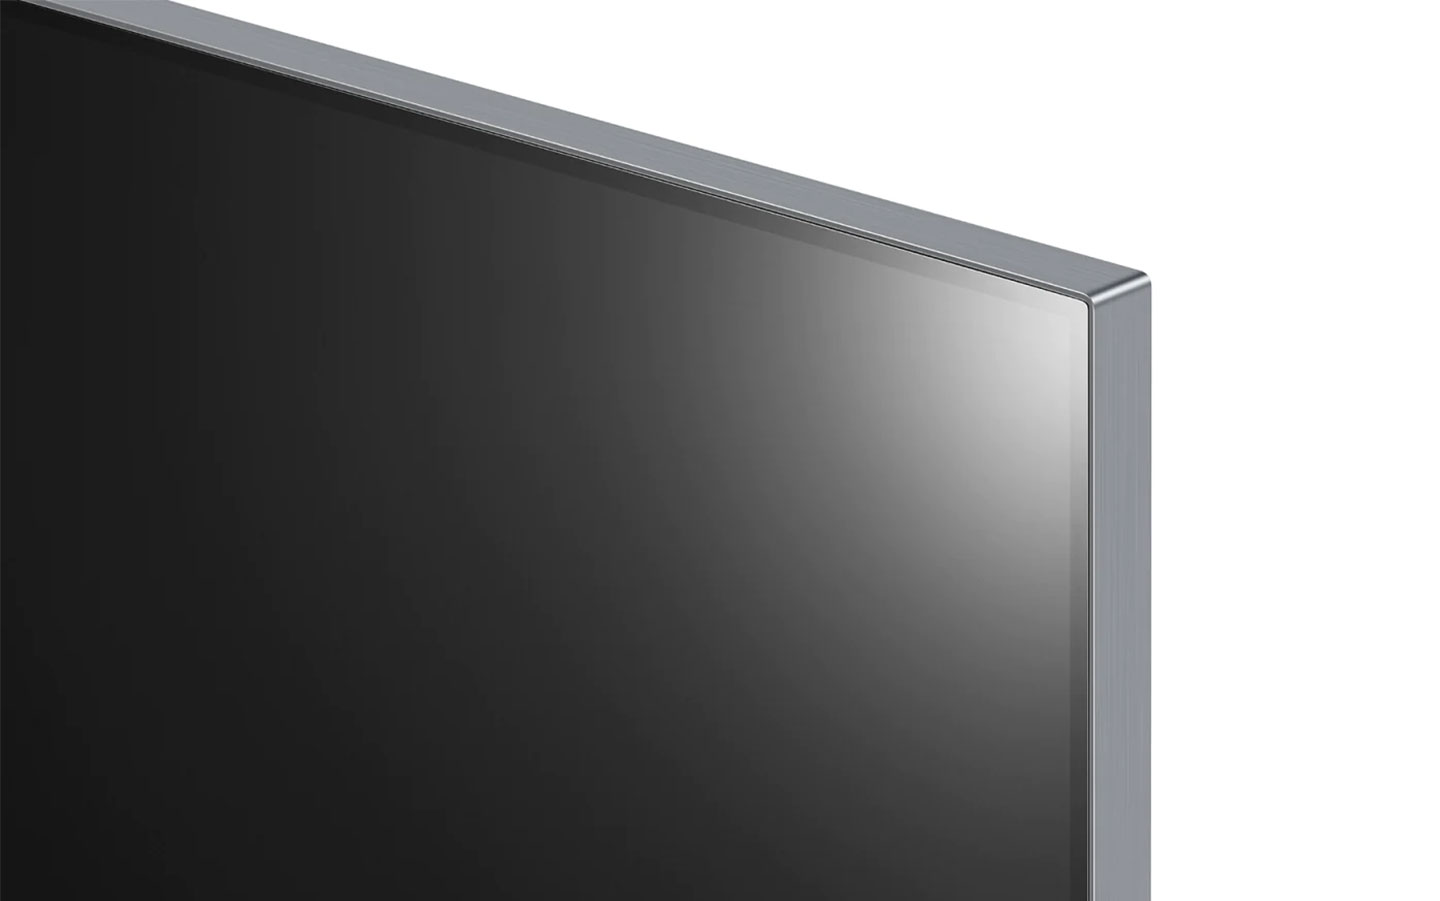 極窄的邊框讓 LG OLED evo G2 零間隙藝廊系列畫面的視覺干擾得以降至最低。